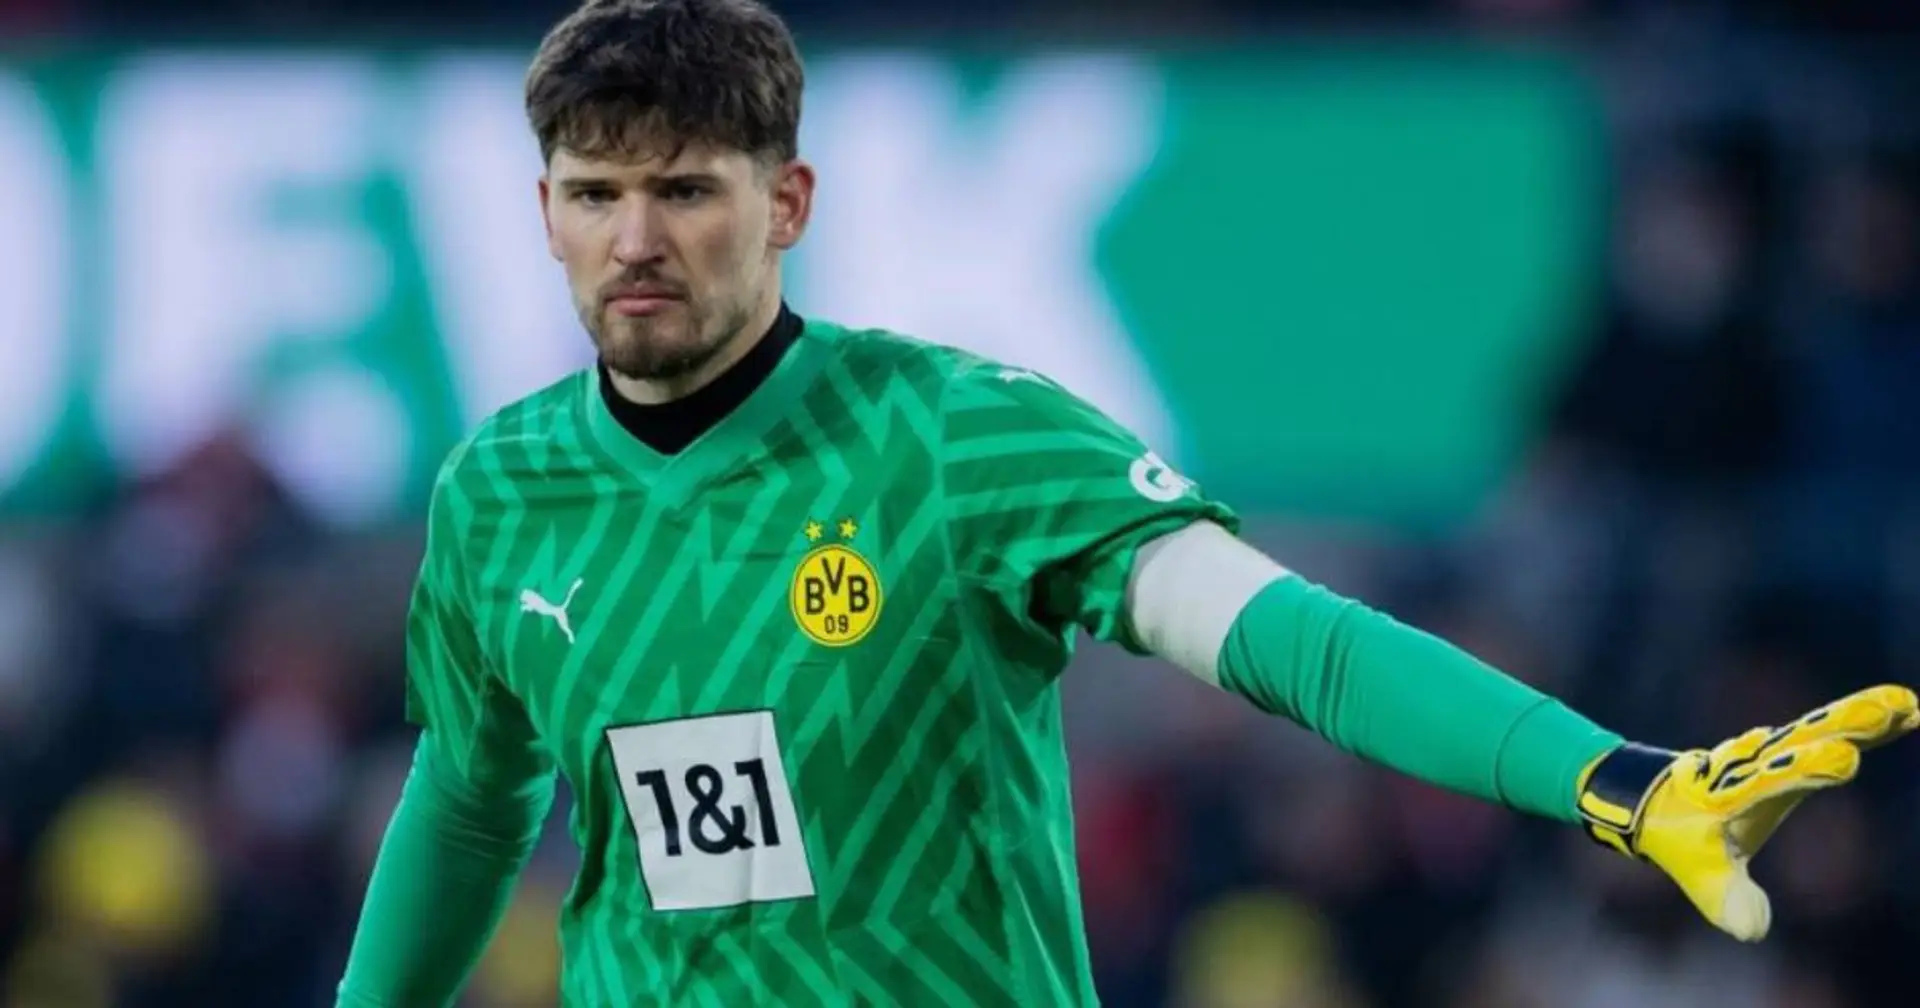 "Das ist nicht die Regel": BVB-Fans wundern sich über ständige Verletzungen bei Gregor Kobel